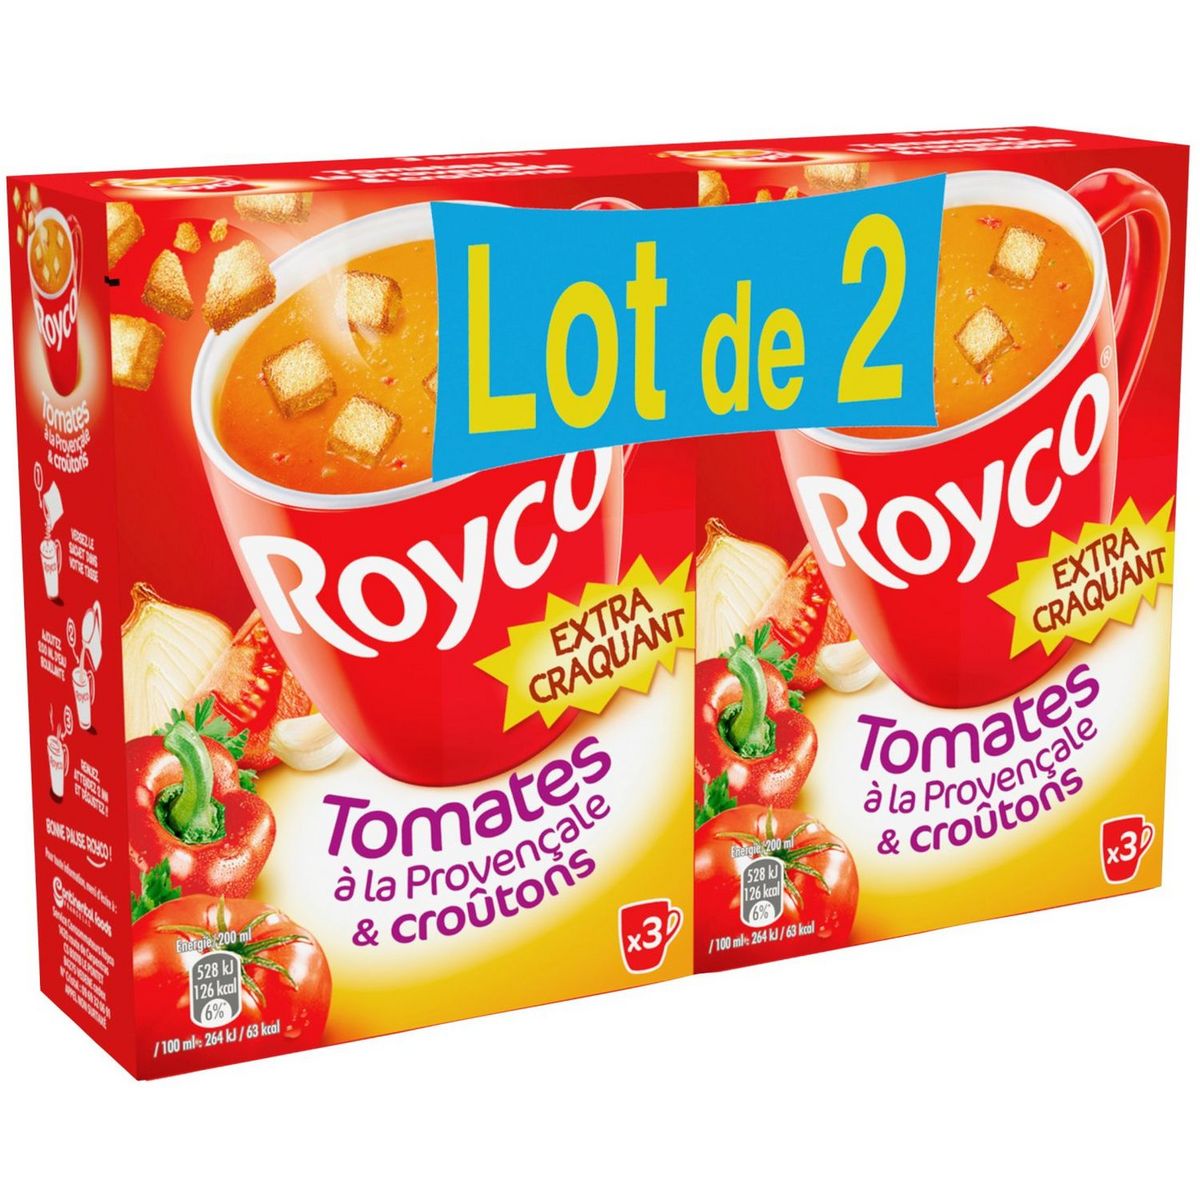 25 sachets Royco soupe aux tomates